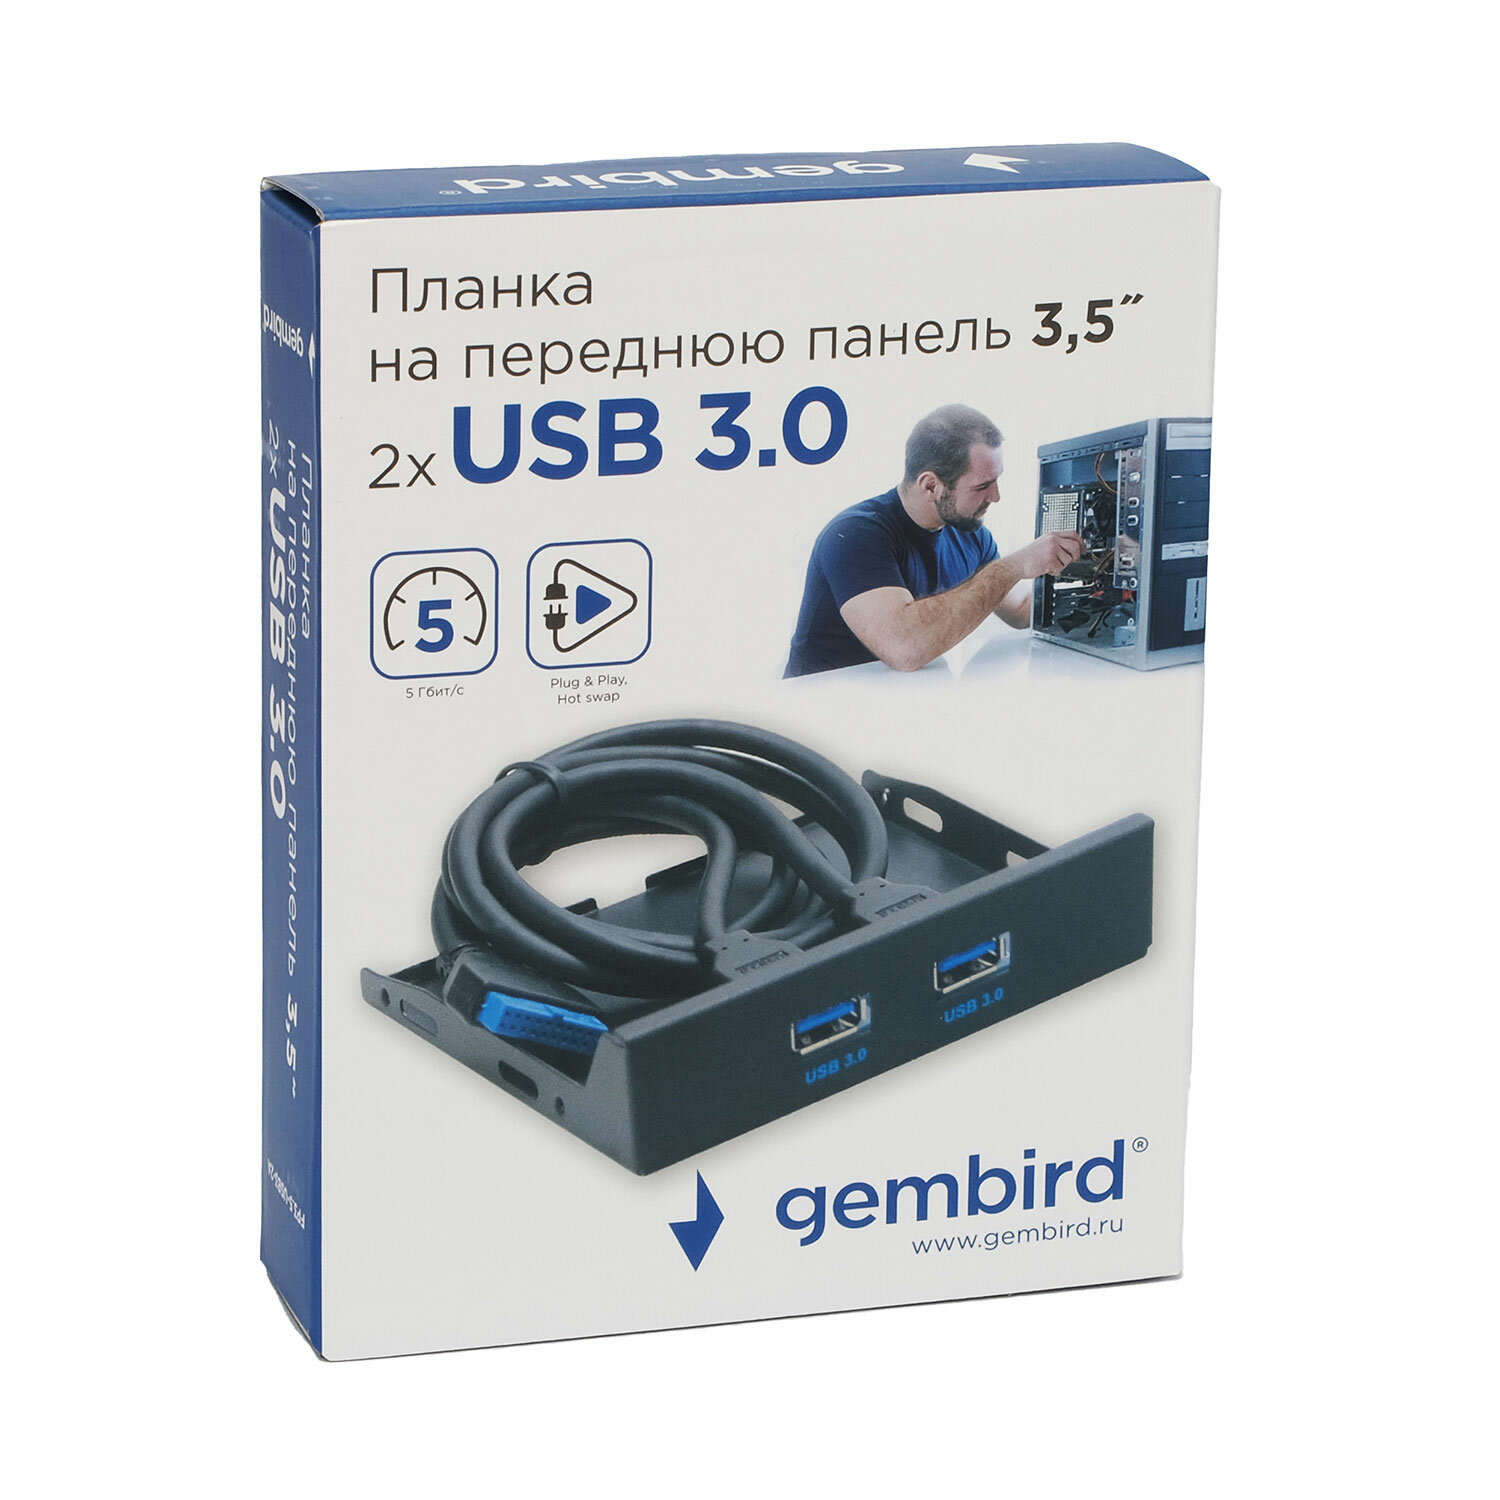 Планка USB 3.0 на переднюю панель 3.5" Gembird 2xUSB-A 3.0